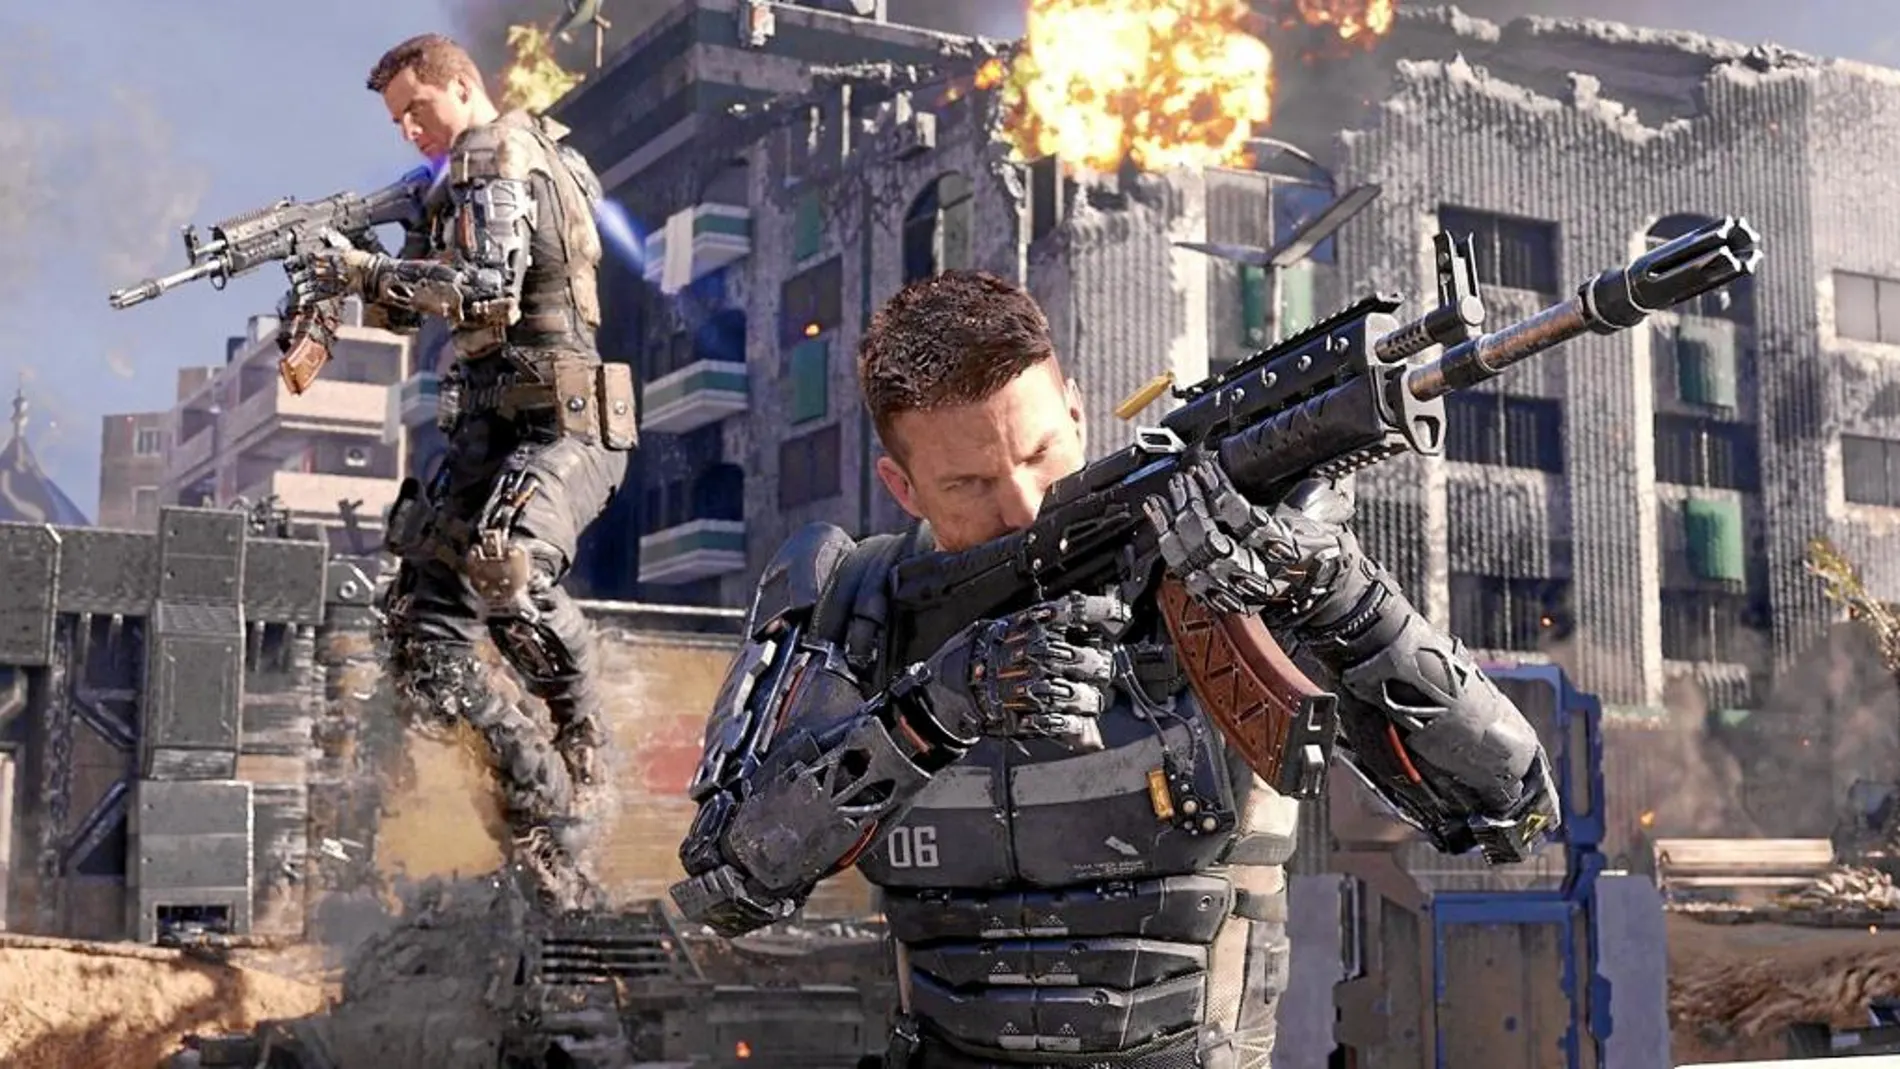 Laa mejores cualidades de «Call of Duty: Black Ops III» son el realismo que le aportan sus avanzados gráficos y su alta jugabilidad